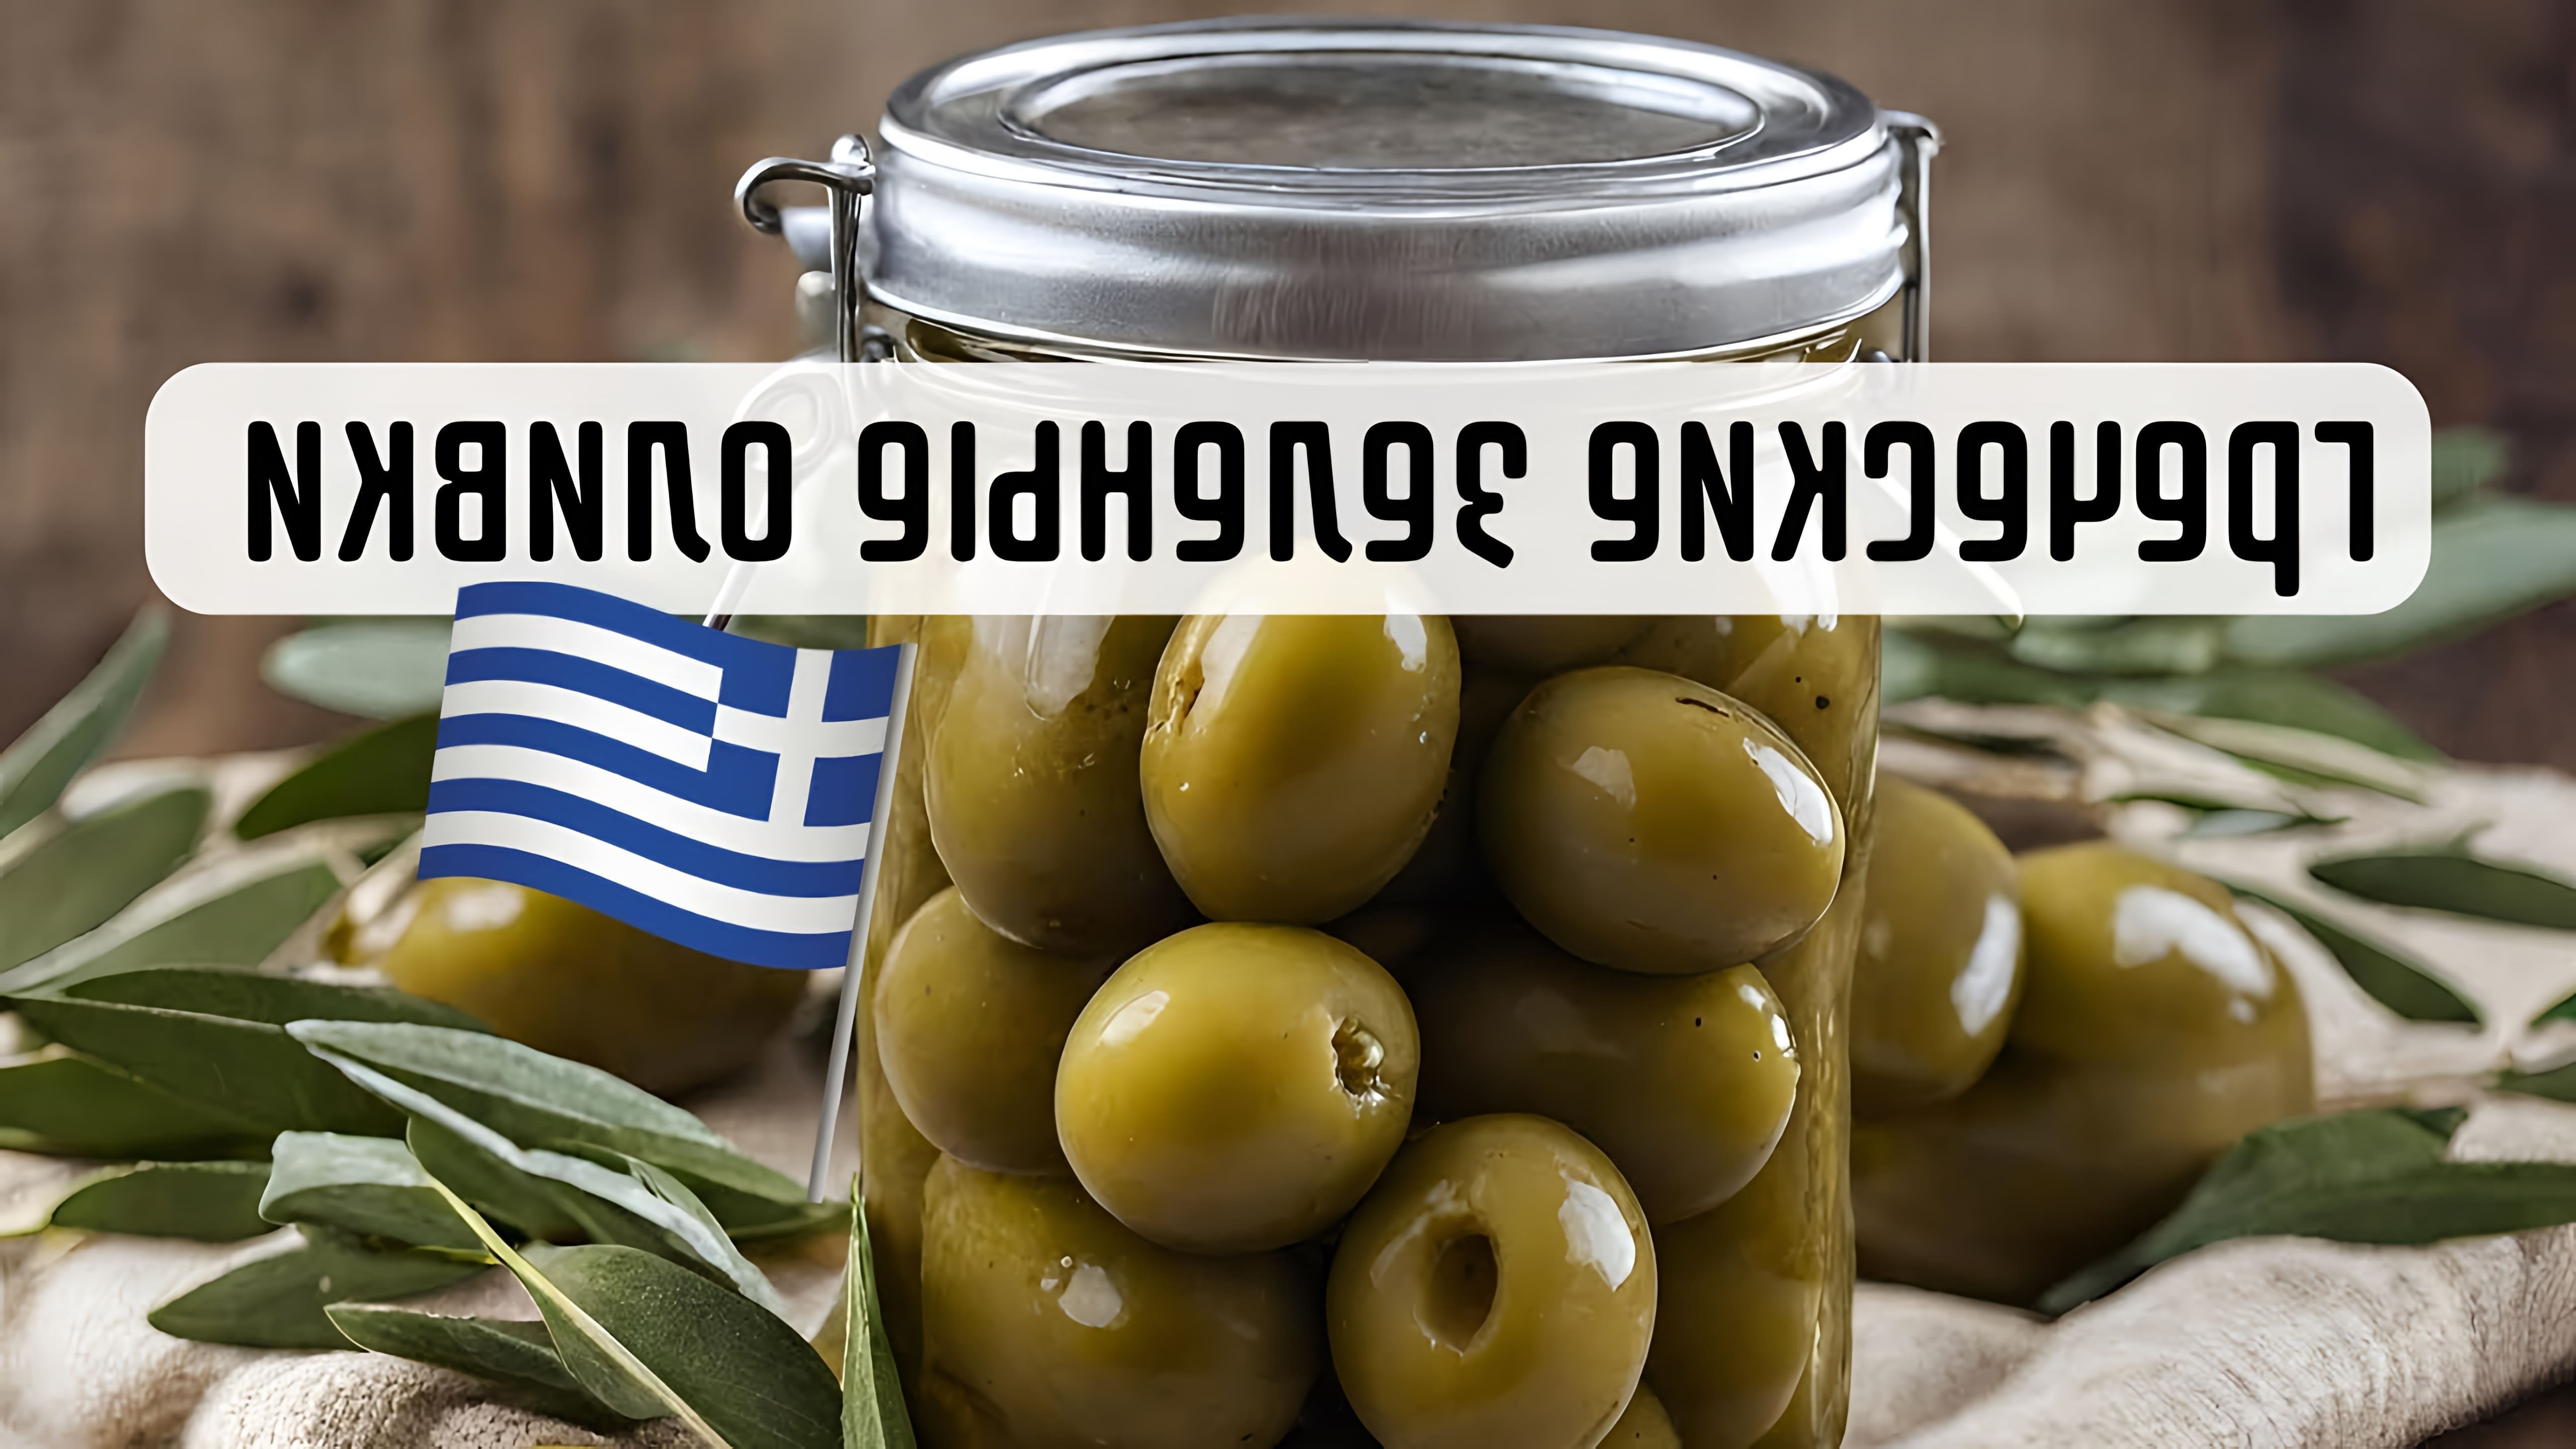 В этом видео рассказывается о том, как солить зеленые оливки по рецепту греческой свекрови